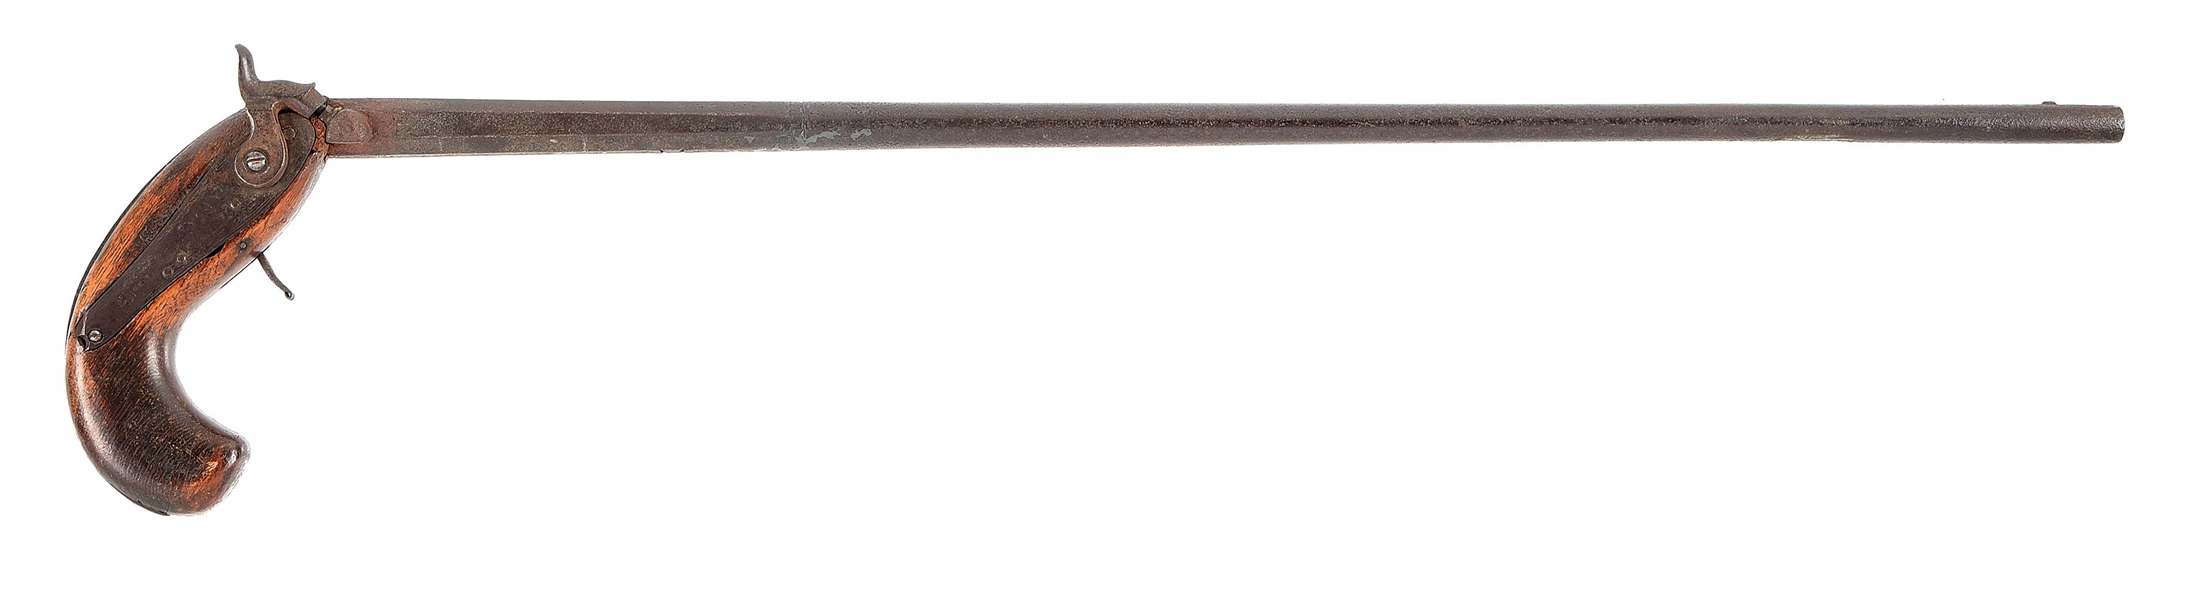 (A) CRUDE AMERICAN PERCUSSION CANE GUN.